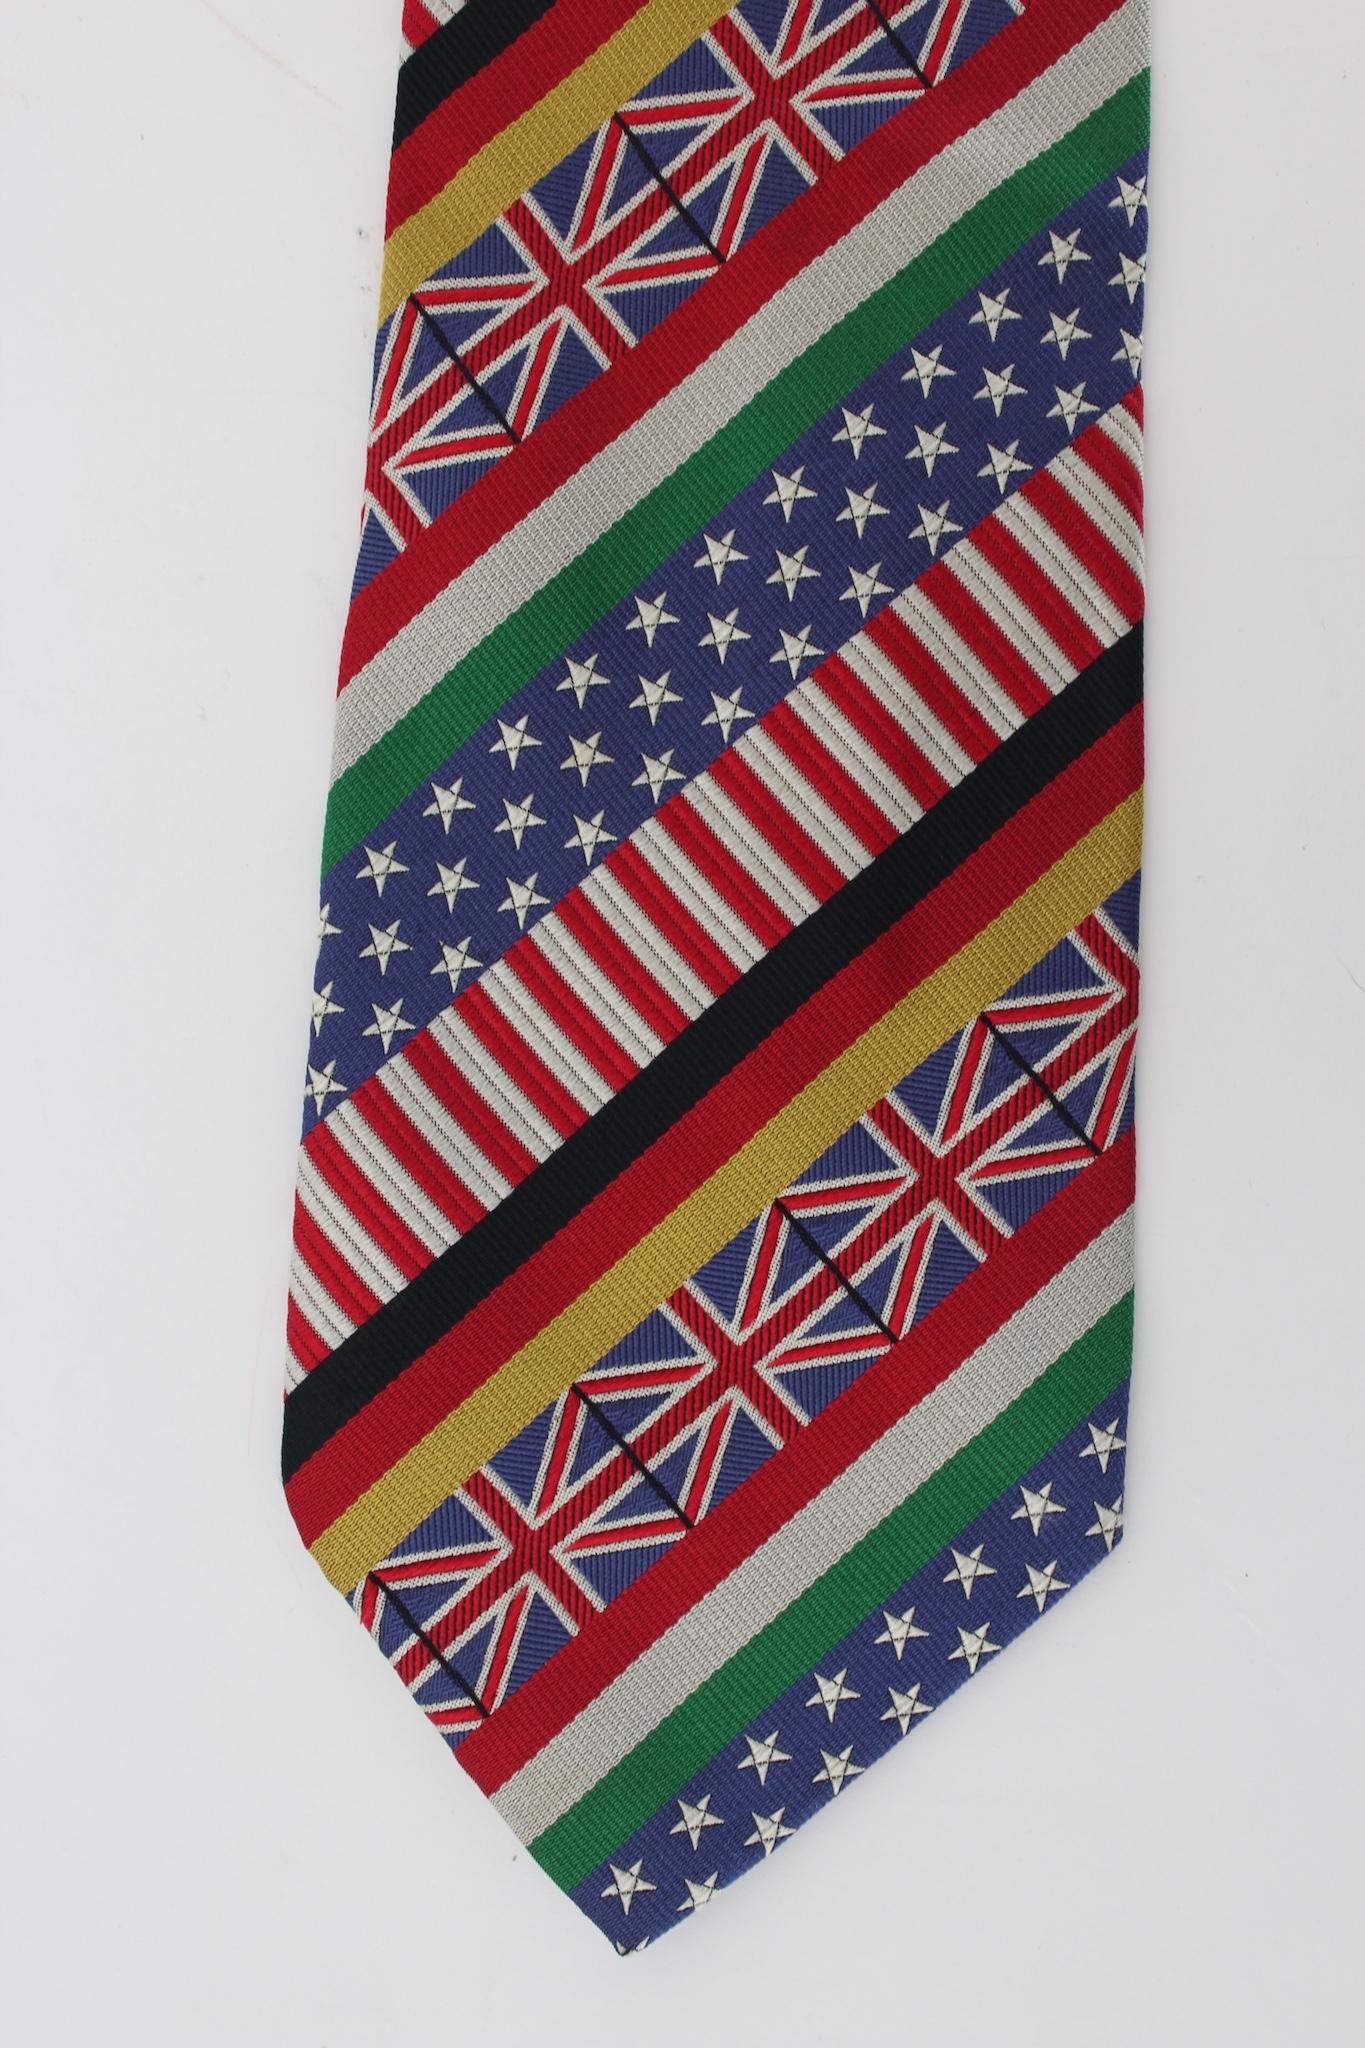 Cravate iconique vintage des années 90 de Moschino. Multicolore avec différents drapeaux dessinés, tissu 100% soie. Fabriquées en Italie.

Longueur : 145 cm
Largeur : 10 cm